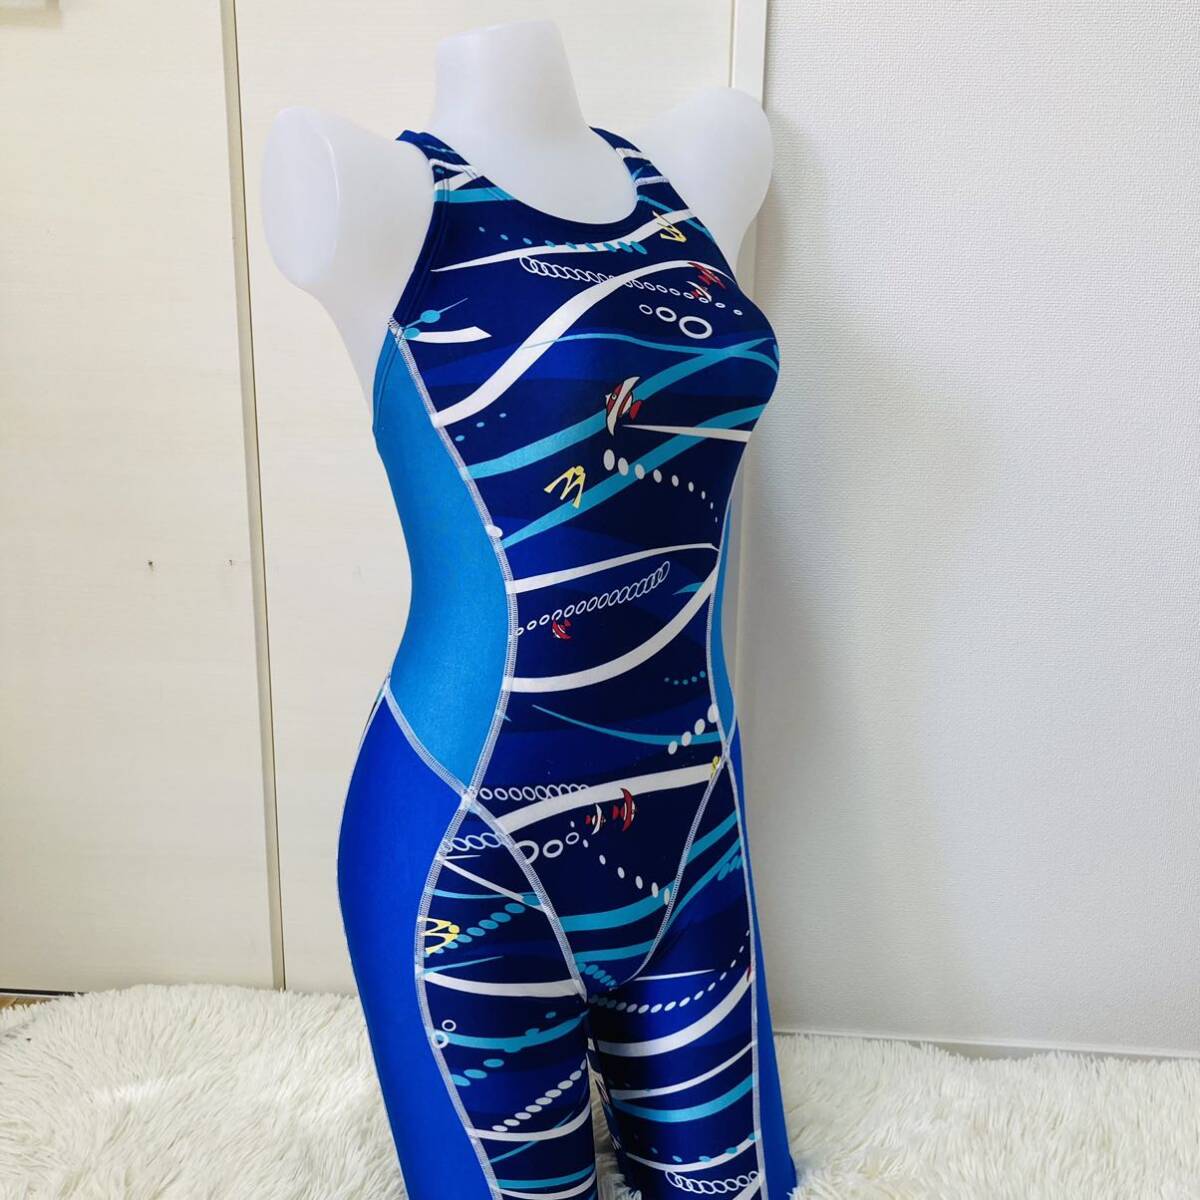 222[ купальный костюм выставить One-piece шорты ] костюм type .. купальный костюм плавание все в одном женщина взрослый симпатичный морской рисунок оттенок голубого M размер 